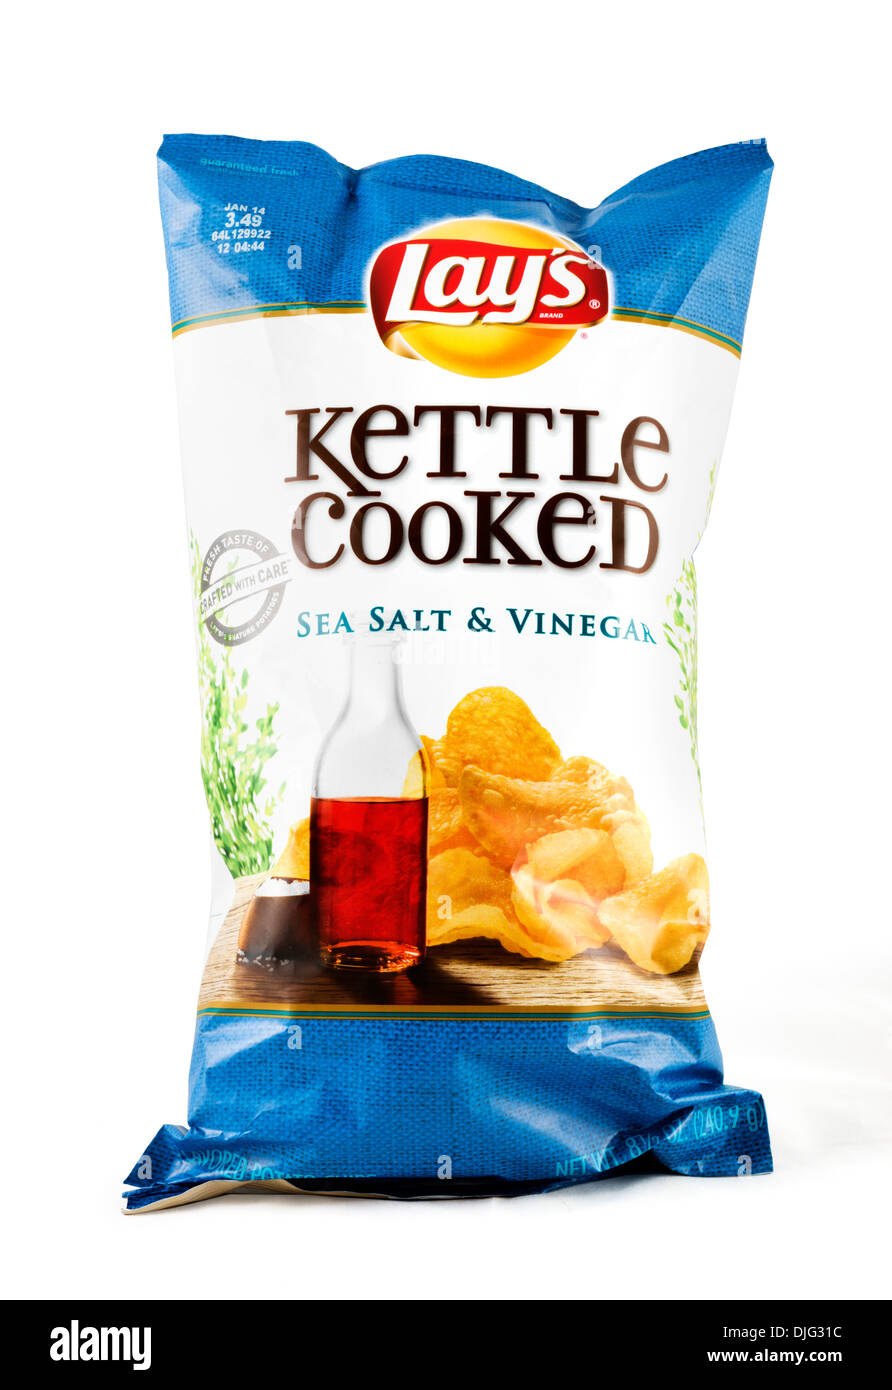 Paquete Grande de Lay's Kettle mar cocidos sal y vinagre papas fritas, EE.UU. Foto de stock